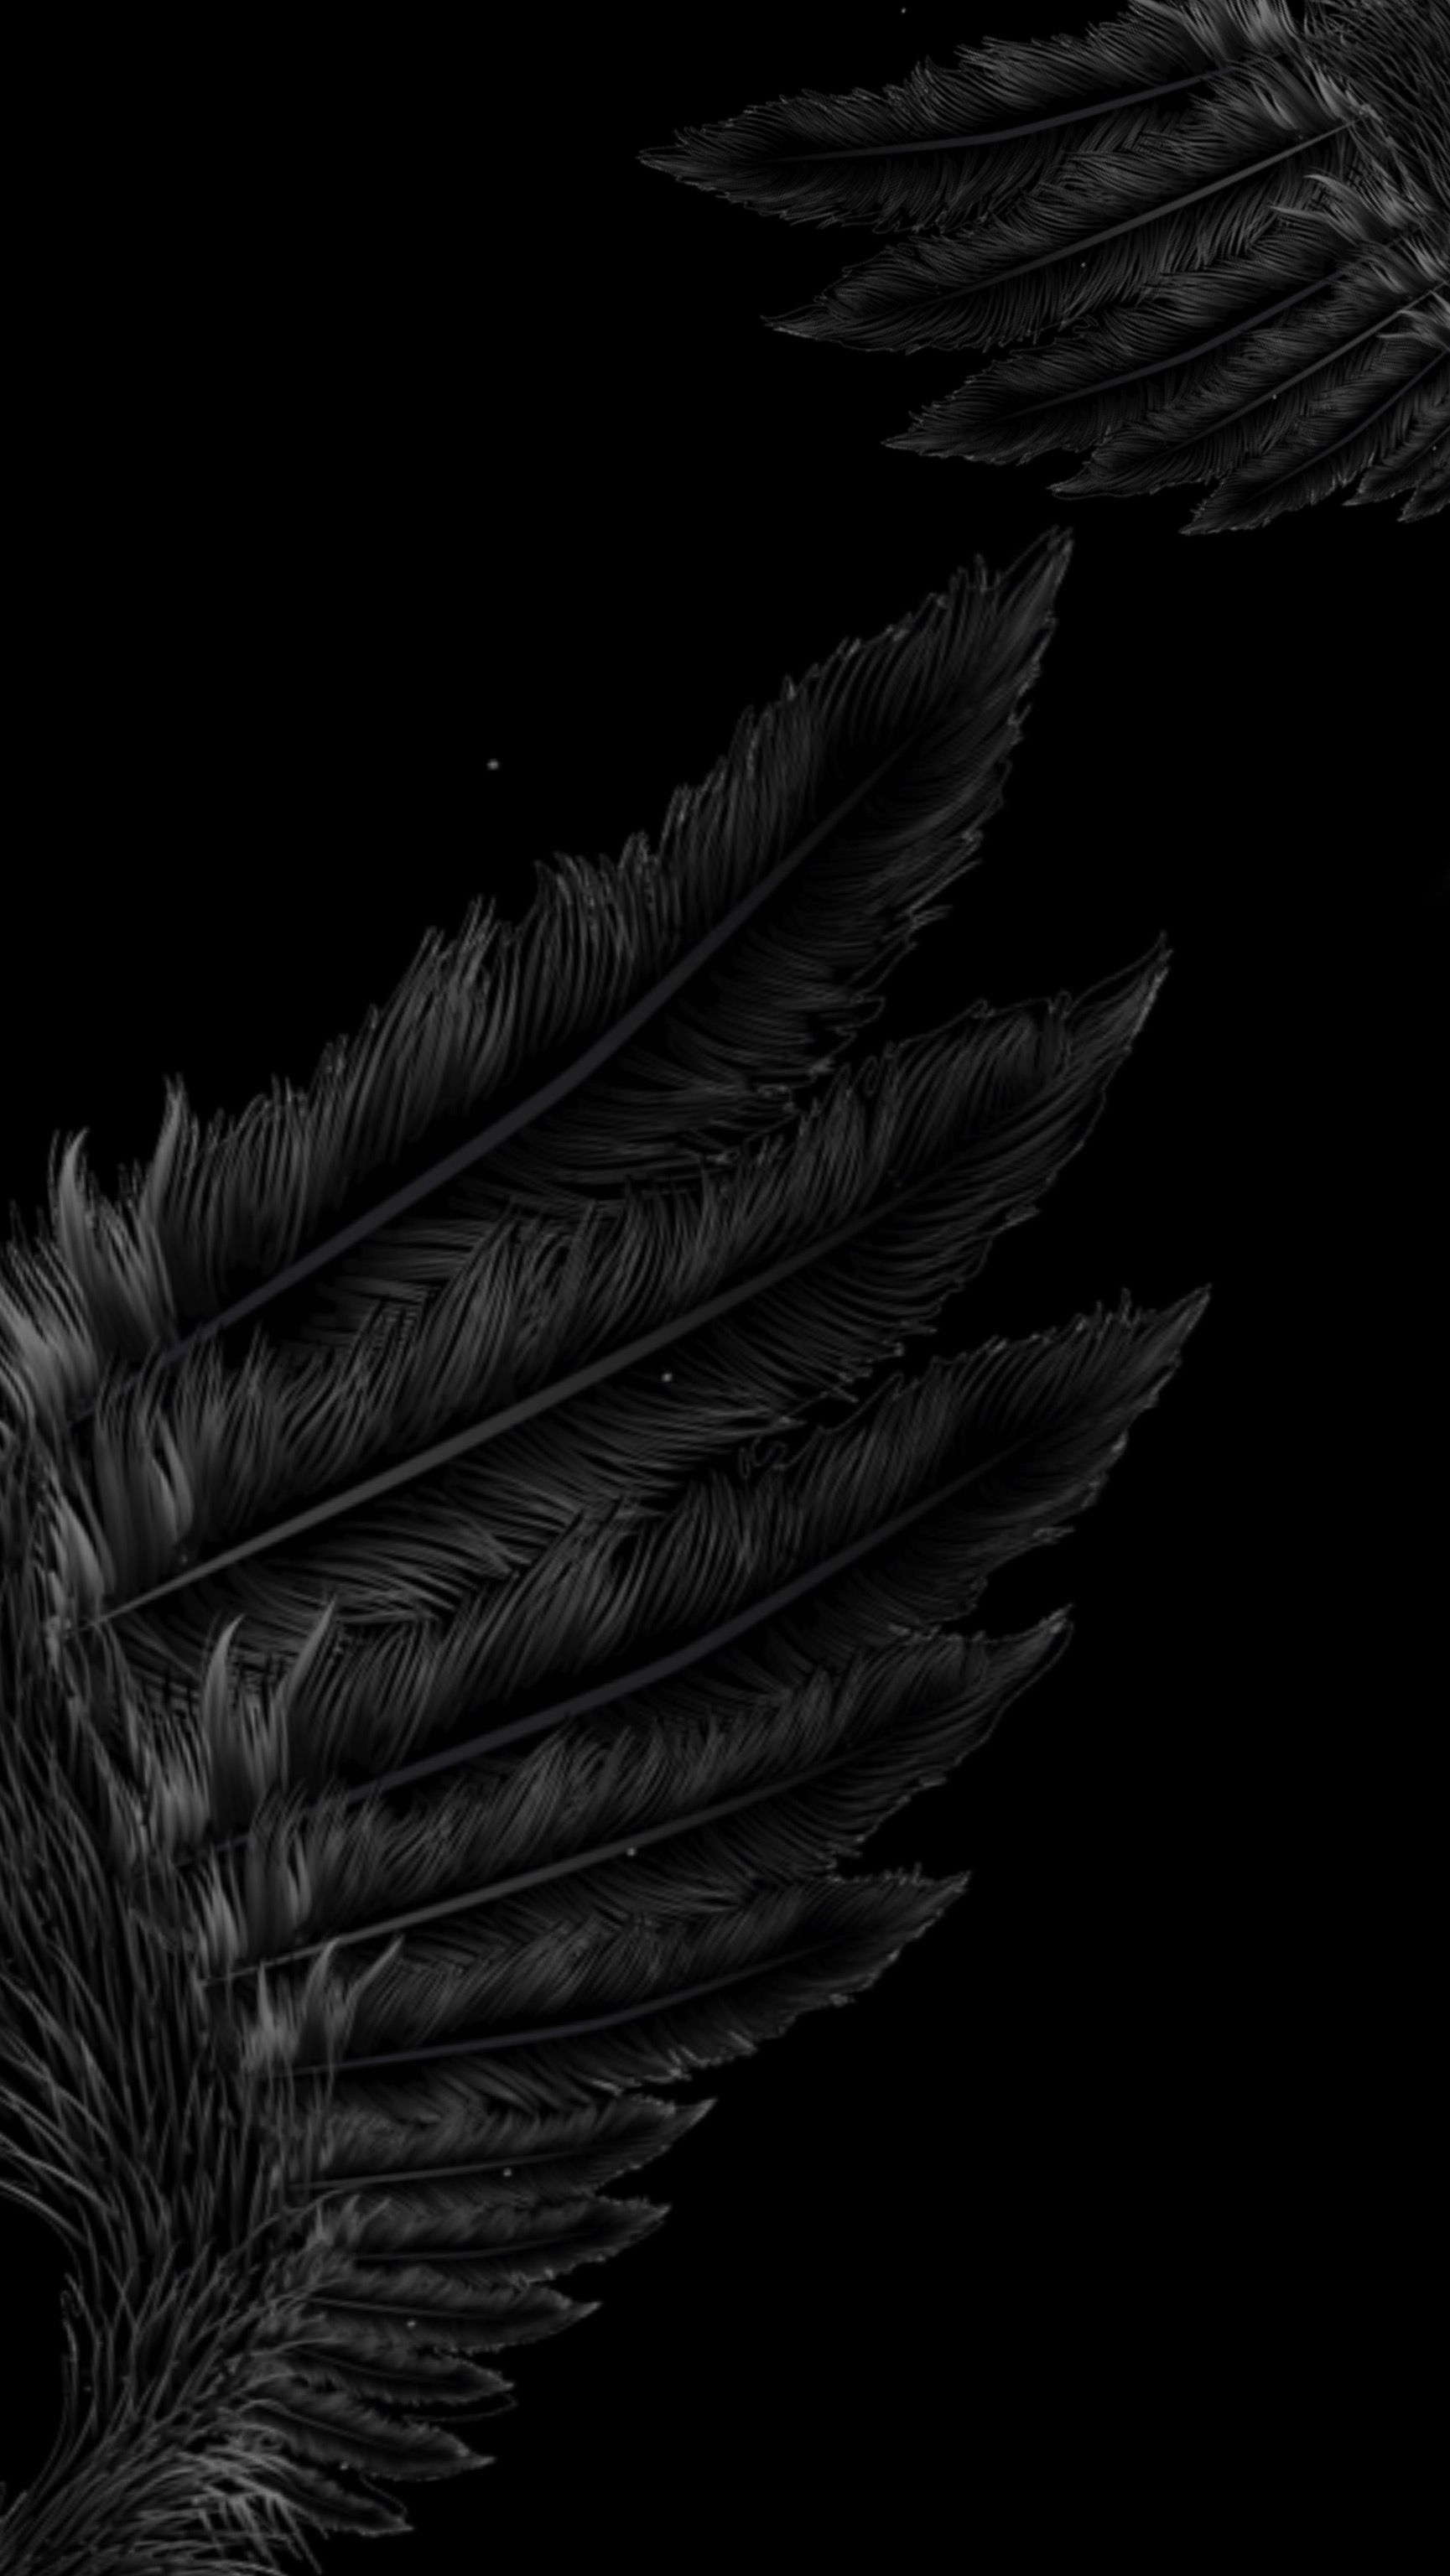 blackwings #wallpaper #blackaesthetic #angel #wings #dark #background. Wings wallpaper, Black aesthetic wallpaper, Black wings